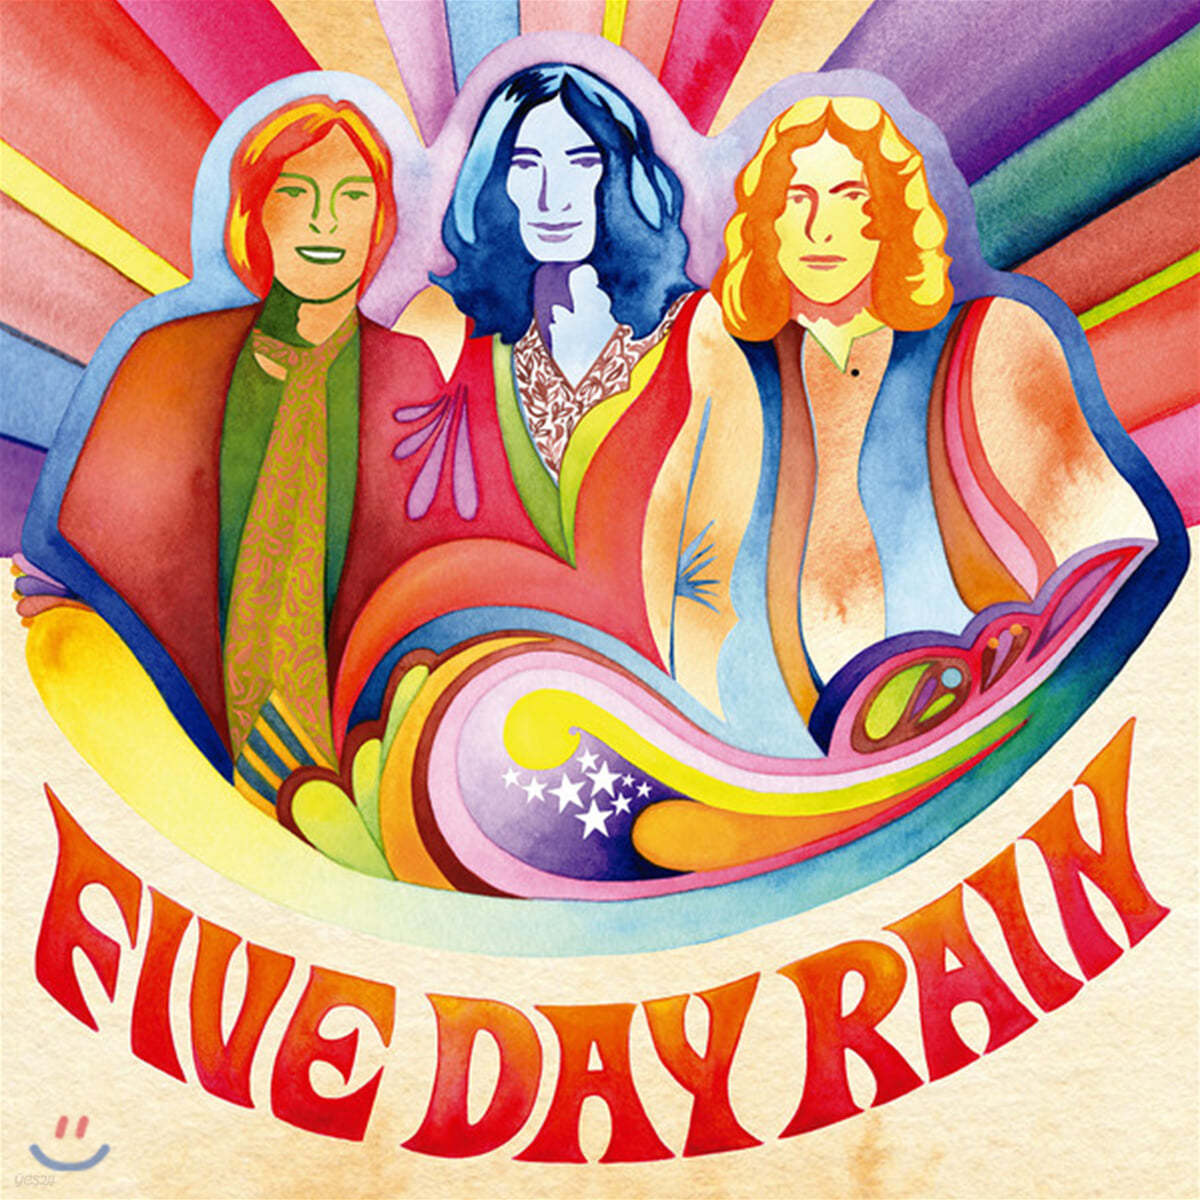 Five Day Rain (파이브 데이 레인) - Five Day Rain [LP] 